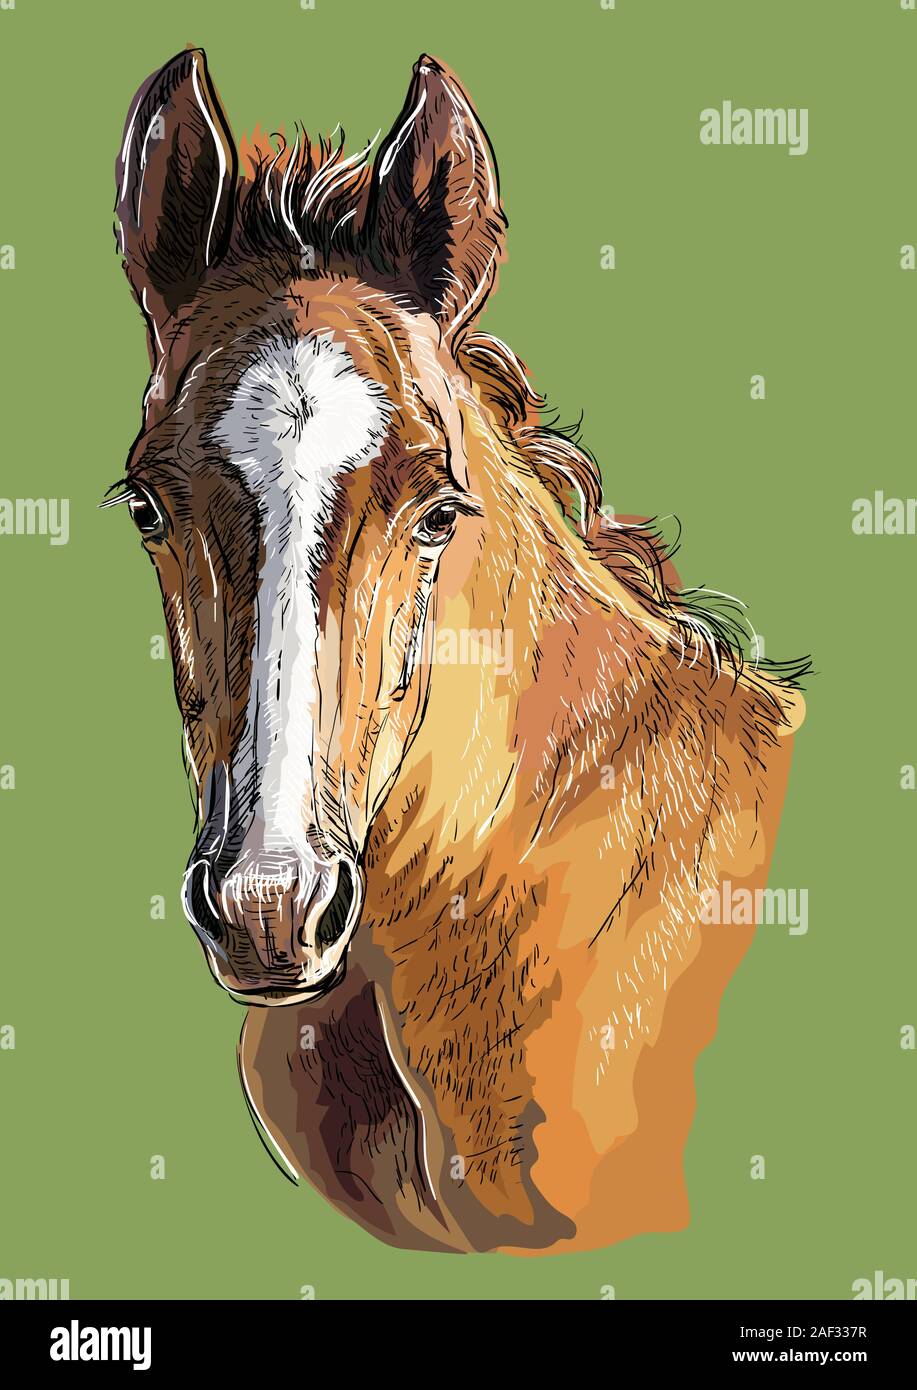 Bunt süß pony Fohlen portrait. Young Pony Kopf auf grünem Hintergrund isoliert. Vektor hand Zeichnung Abbildung. Retro Style Portrait von Pony. Stock Vektor